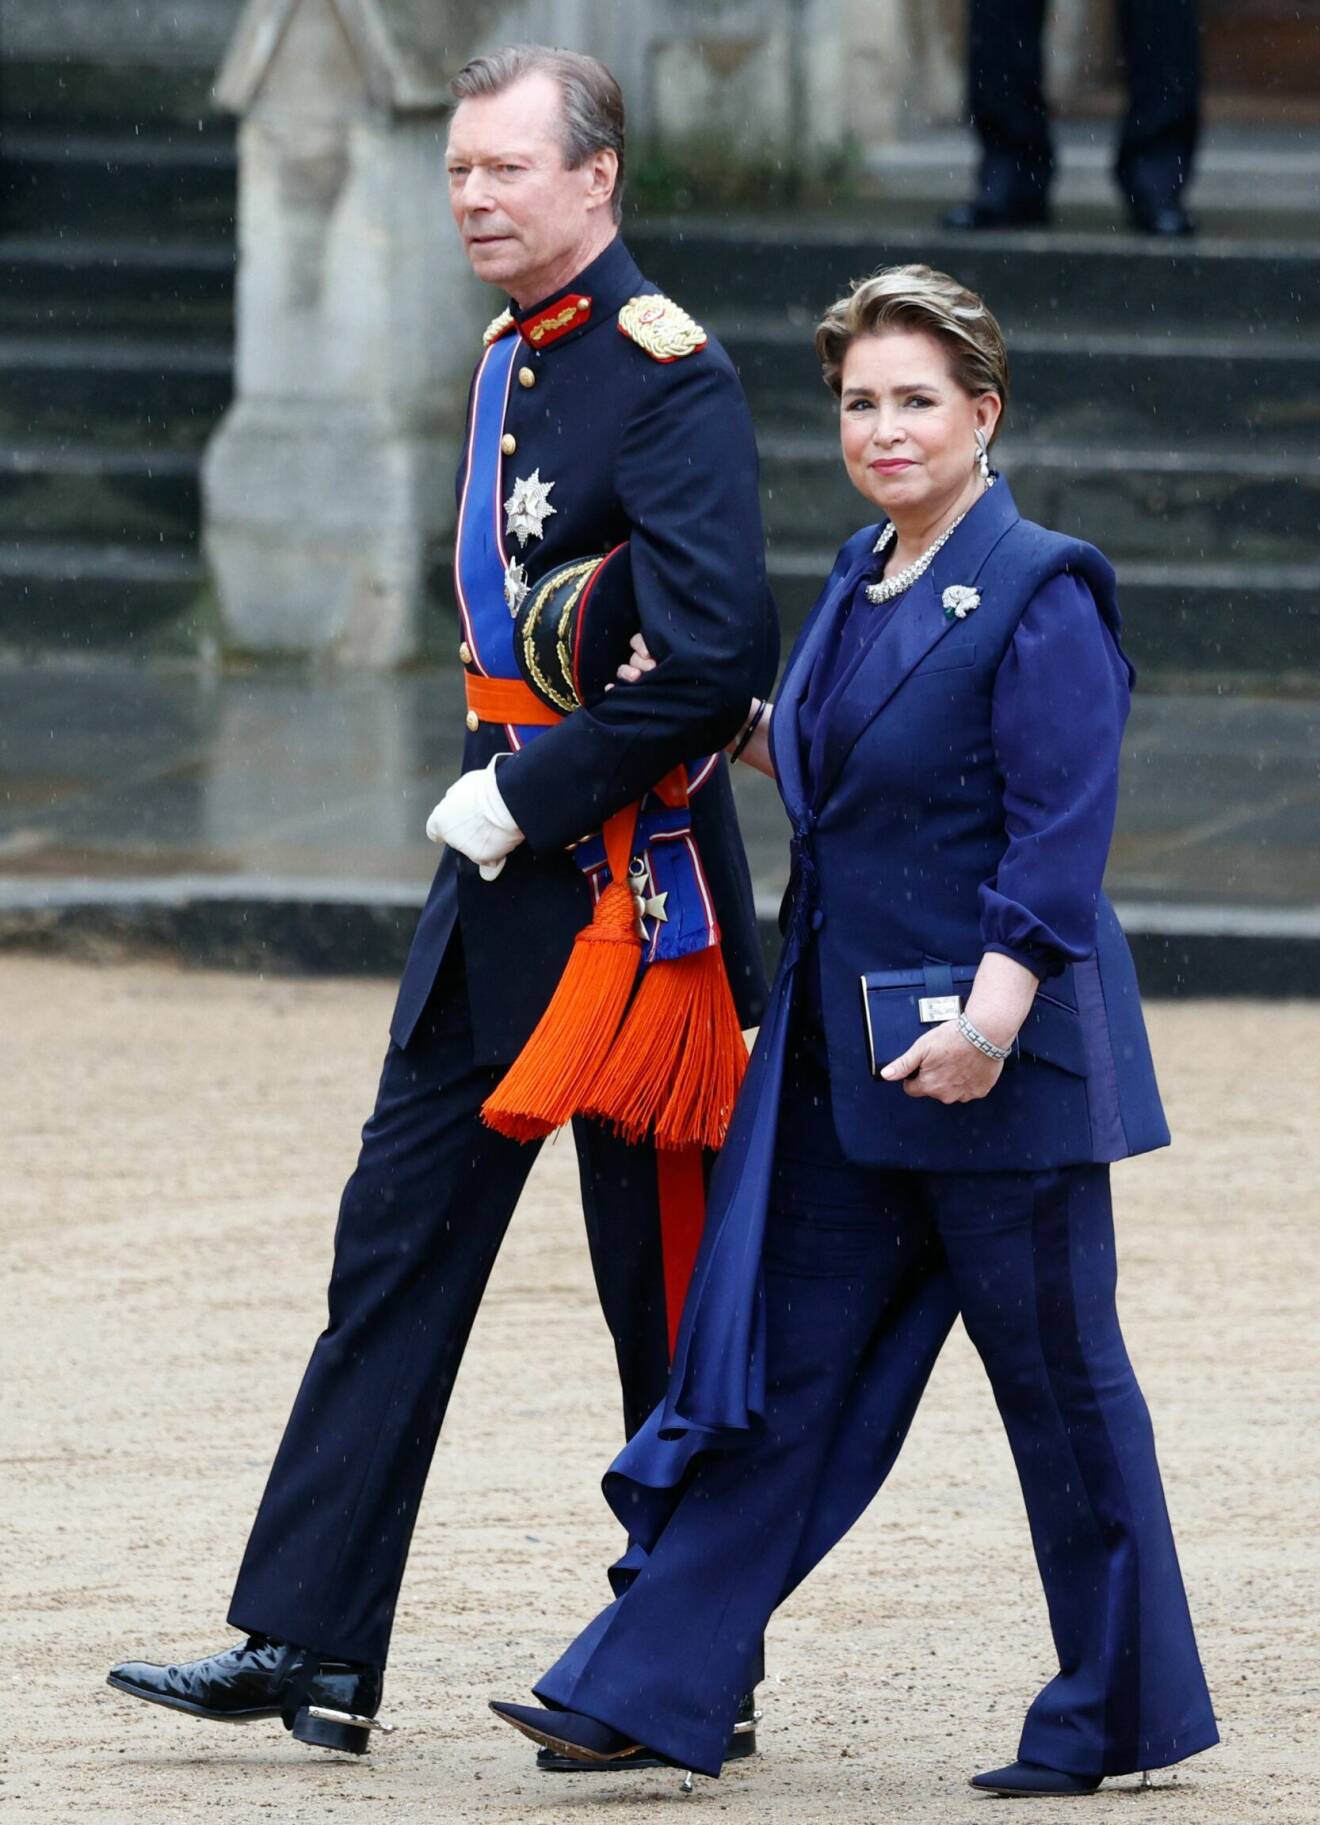 Storhertiginnan Maria Teresa av Luxemburg i byxdress från Alexander McQueen, här med sin man storhertig Henri